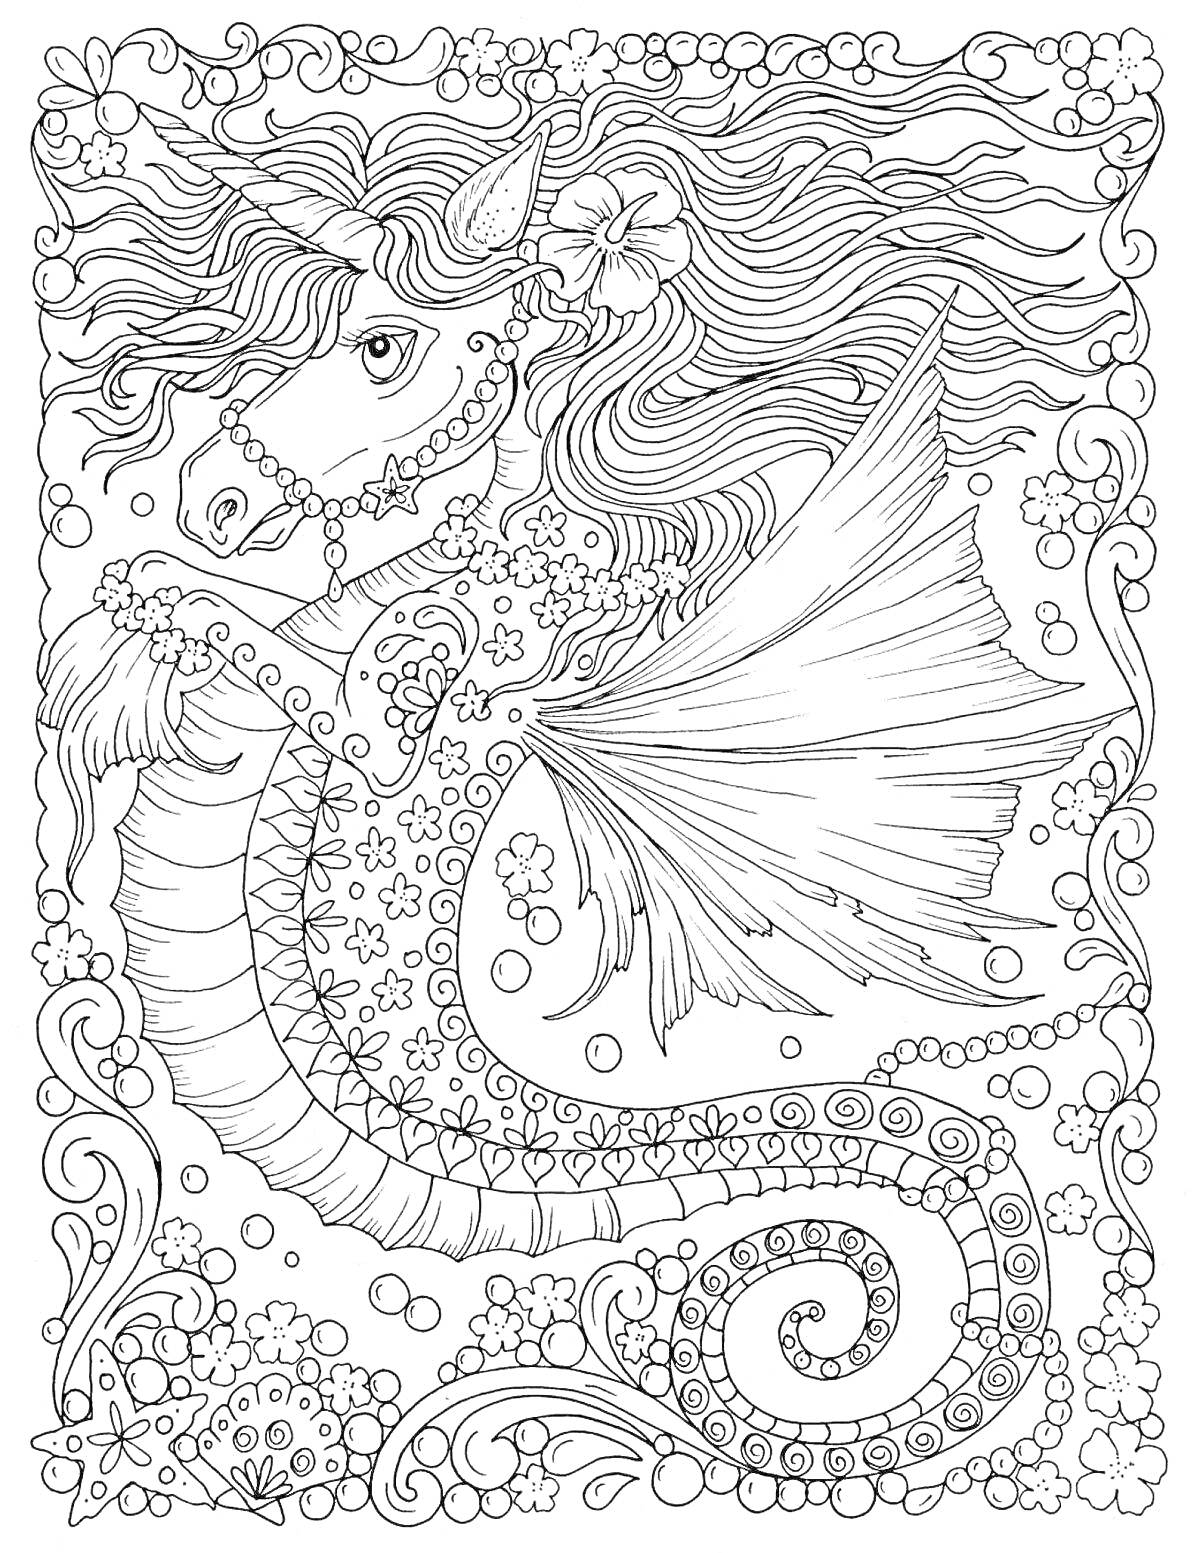 Раскраска Русалка с цветочным узором и украшениями, на фоне подводного мира с пузырями и цветами